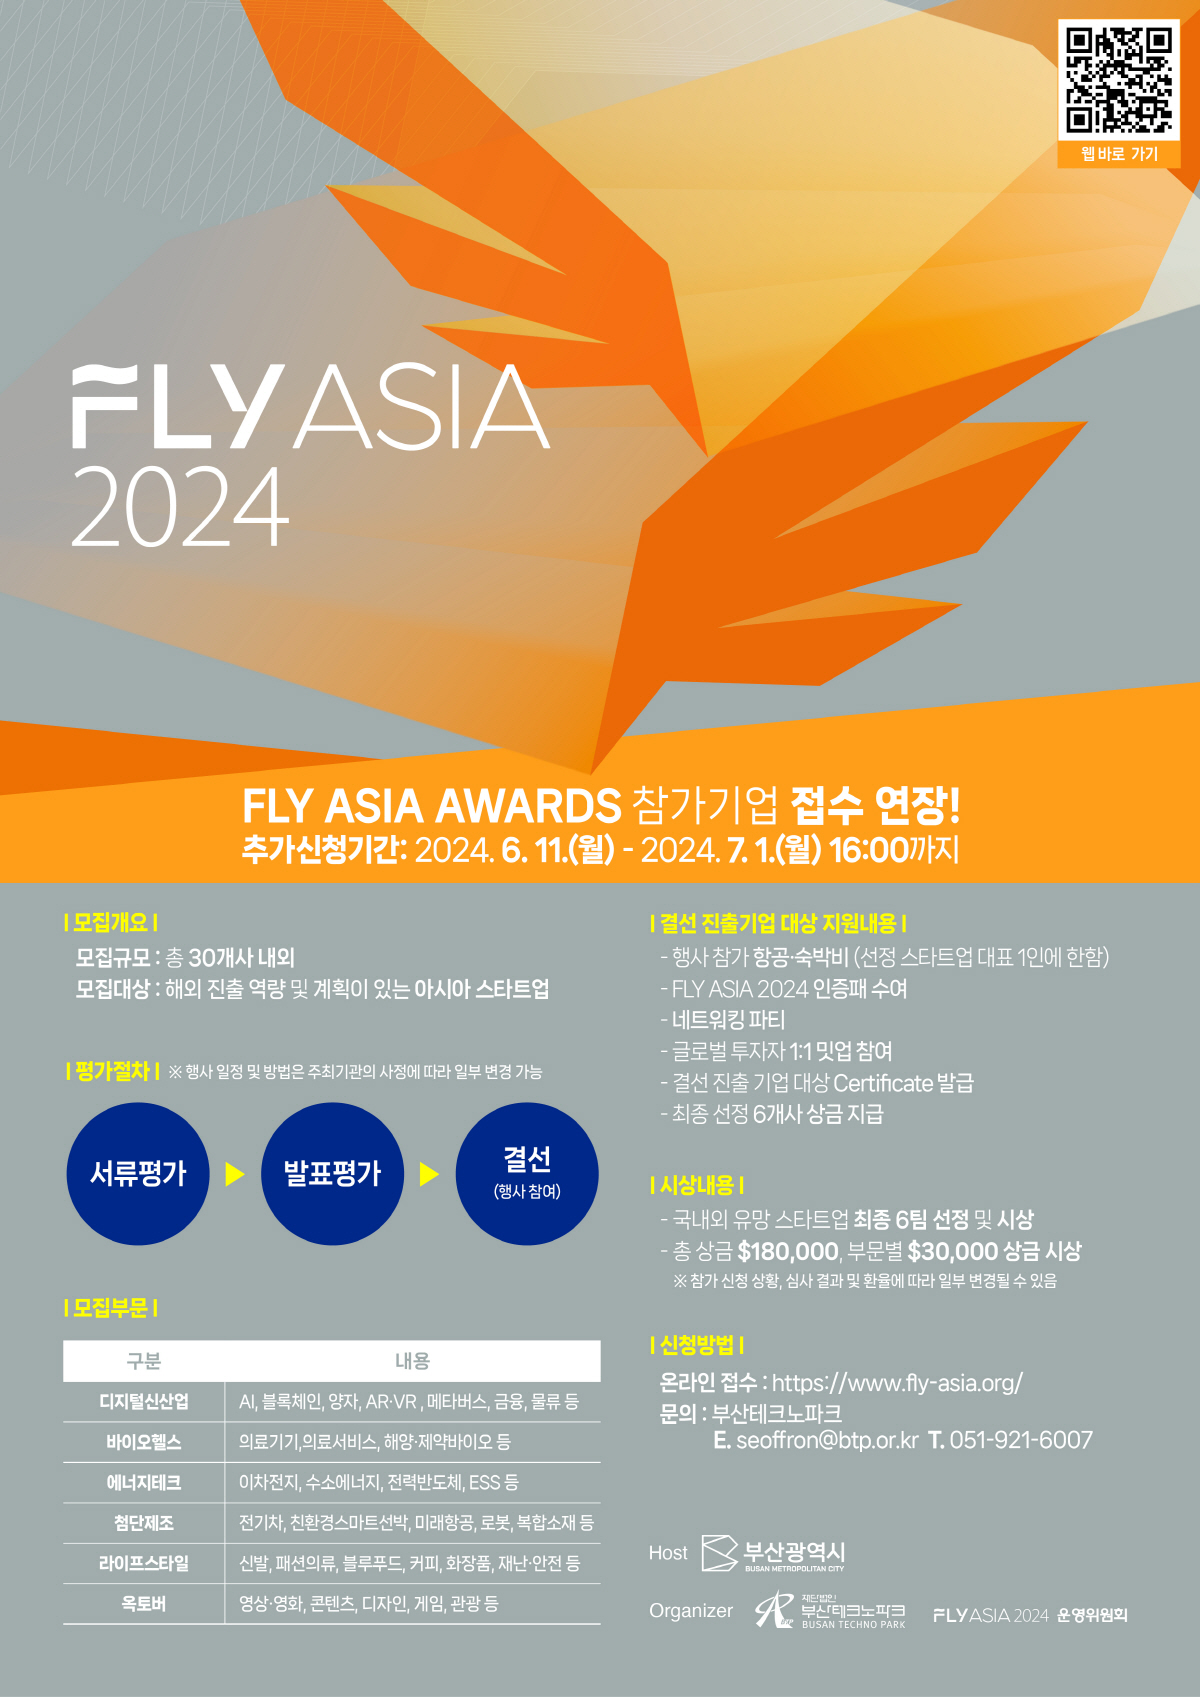 FLY ASIA 2024. FLY ASIA AWARDS 참가기업 접수 연장! 추가신청기간:2024.6.11.(월) ~ 2024.7.1.(월) 16:00까지